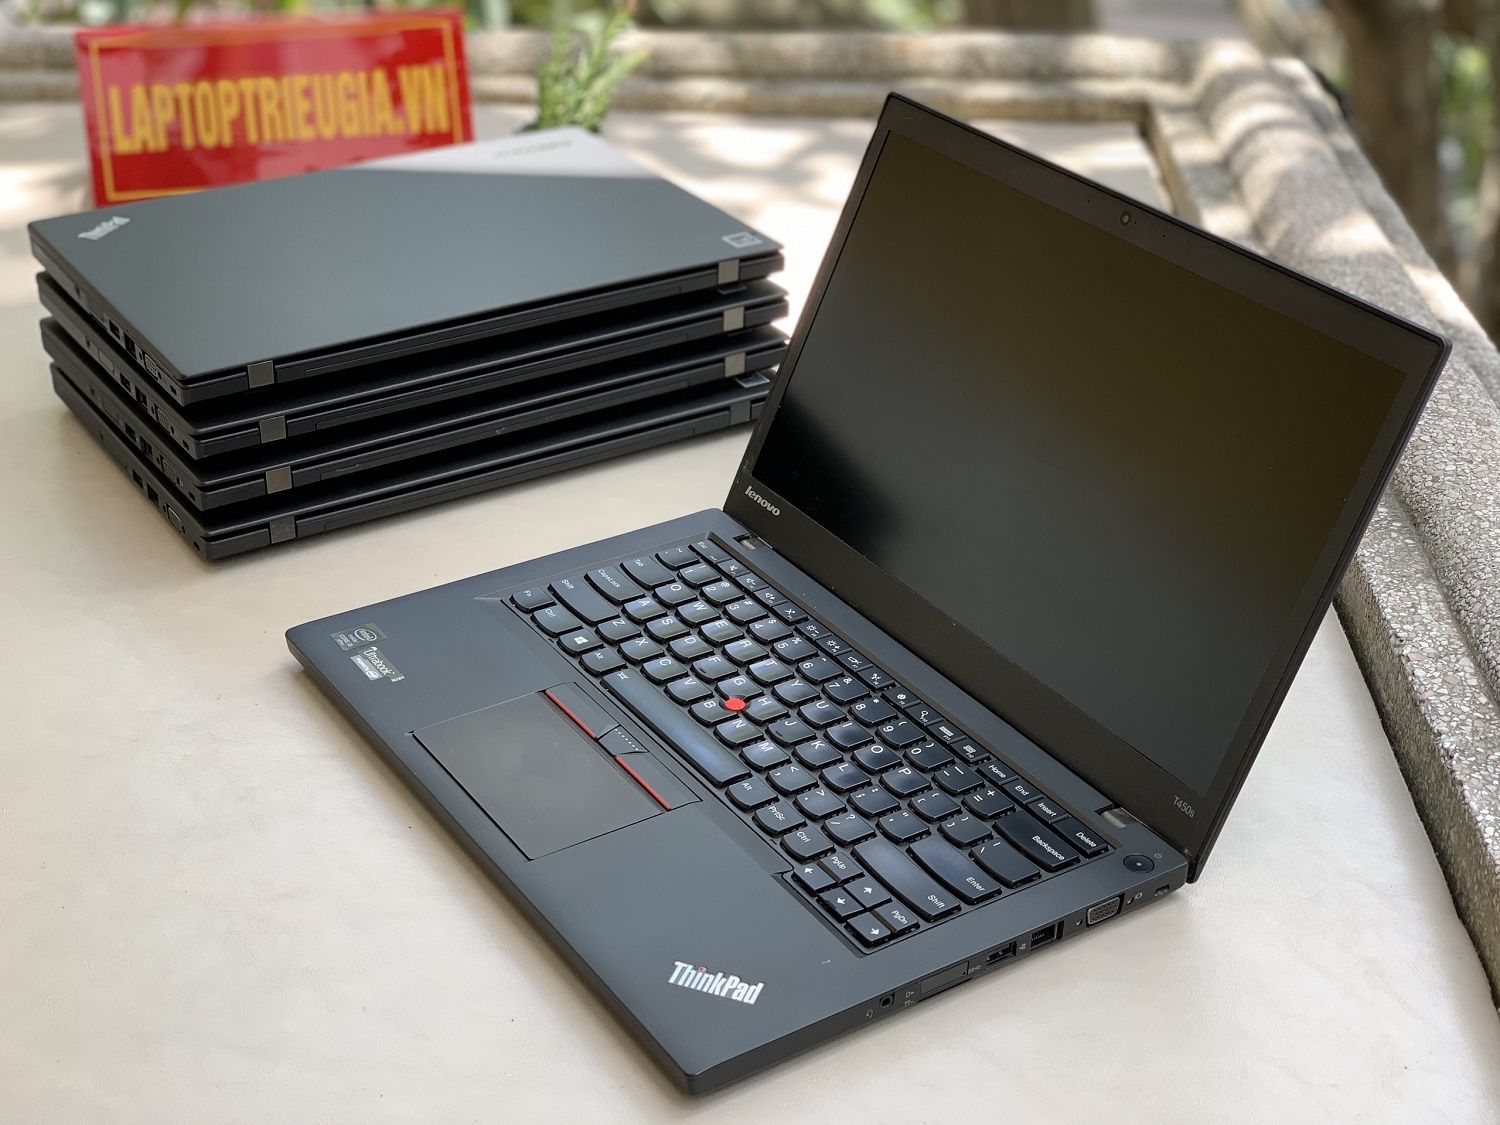 Lenovo Thinkpad T450s : i5-5300U | 8Gb | SSD 240Gb | 14.0 HD+  Máy đẹp likenew